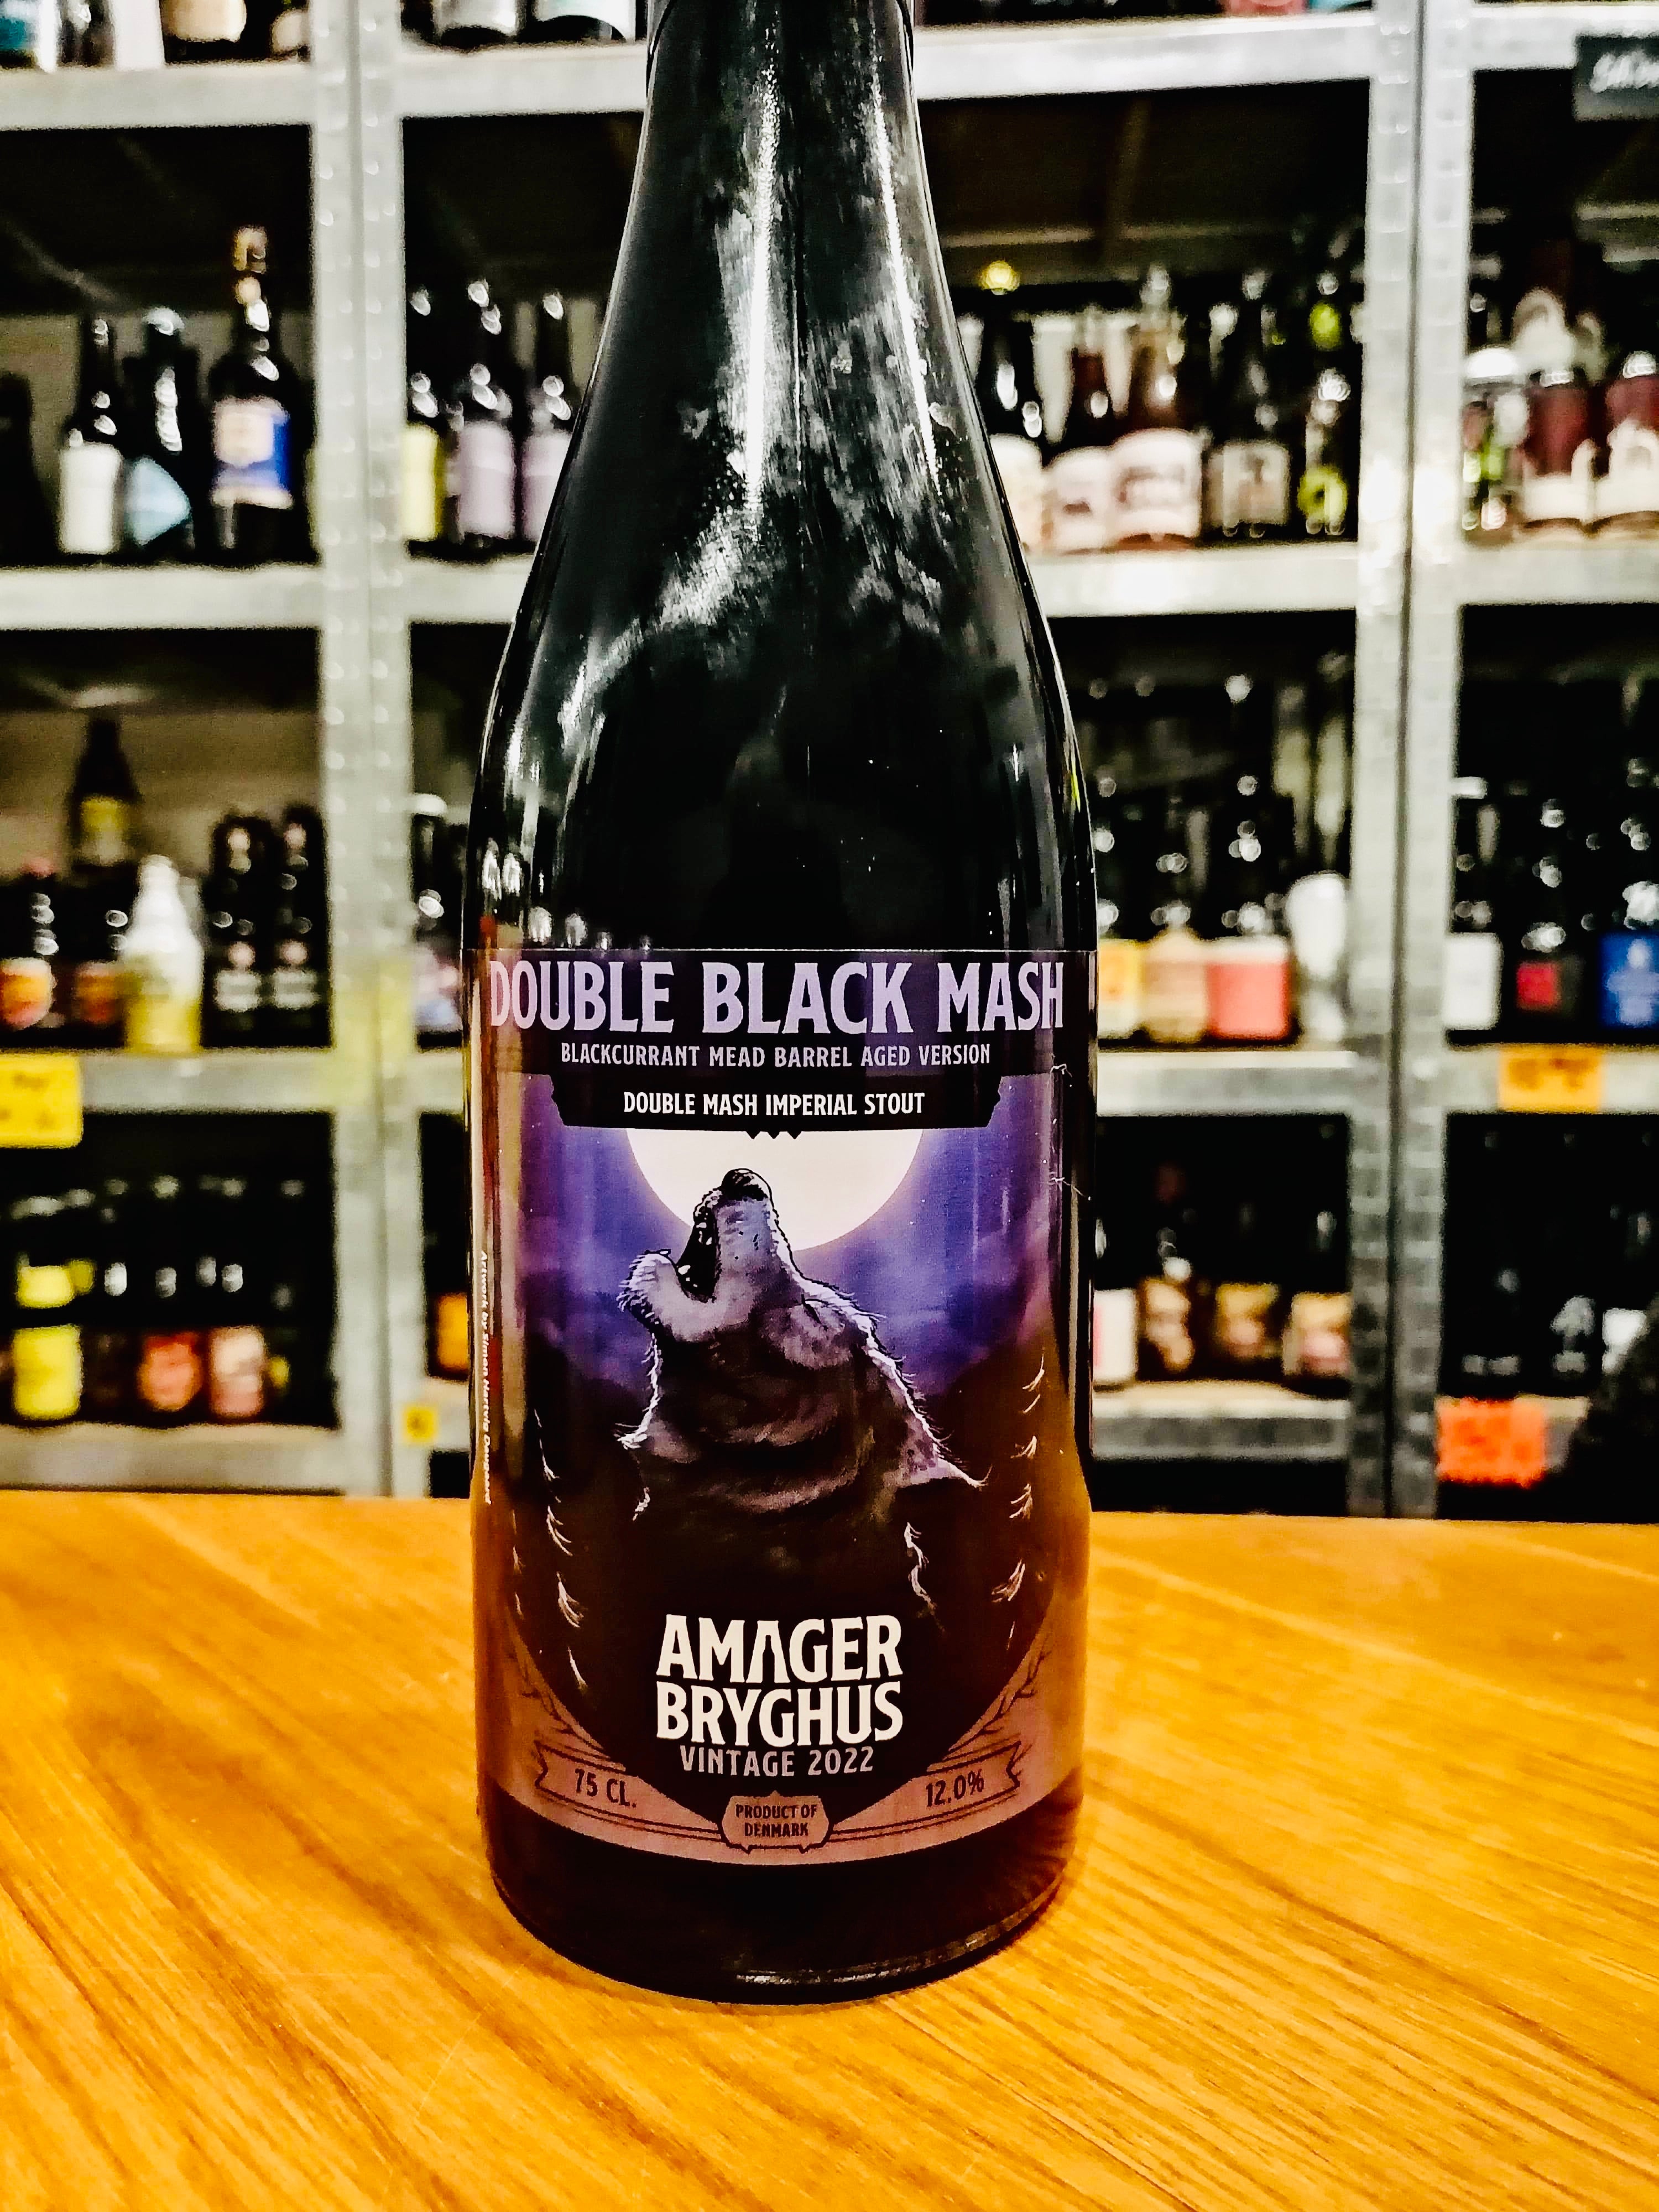 Se Double black mash vintage 2022 (Blackcurrant mead fadlagret) - Amager bryghus hos Beershoppen.dk